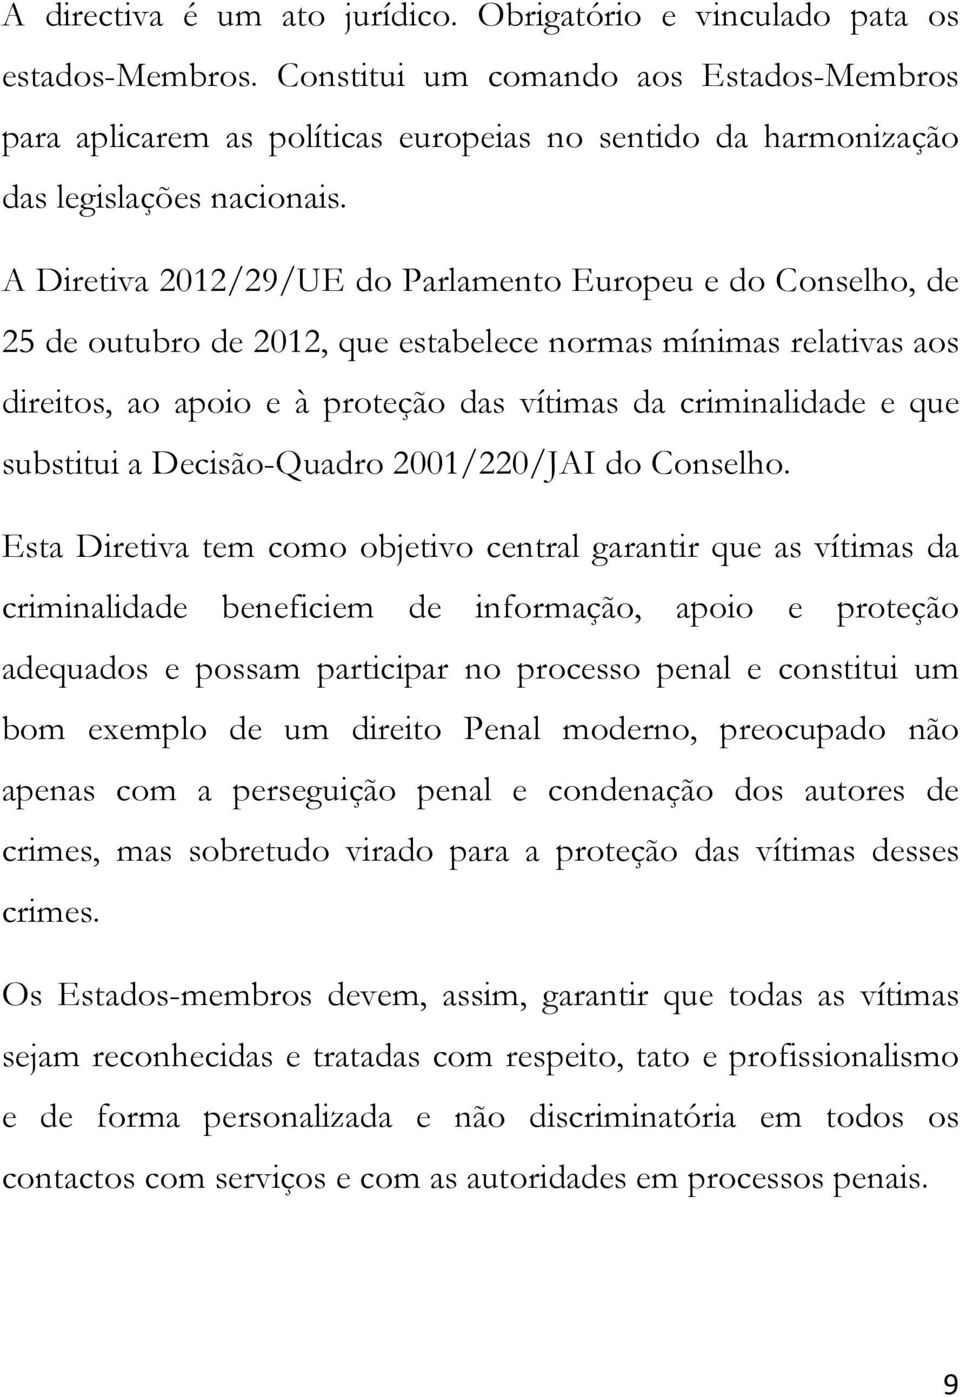 A Diretiva 2012/29/UE do Parlamento Europeu e do Conselho, de 25 de outubro de 2012, que estabelece normas mínimas relativas aos direitos, ao apoio e à proteção das vítimas da criminalidade e que